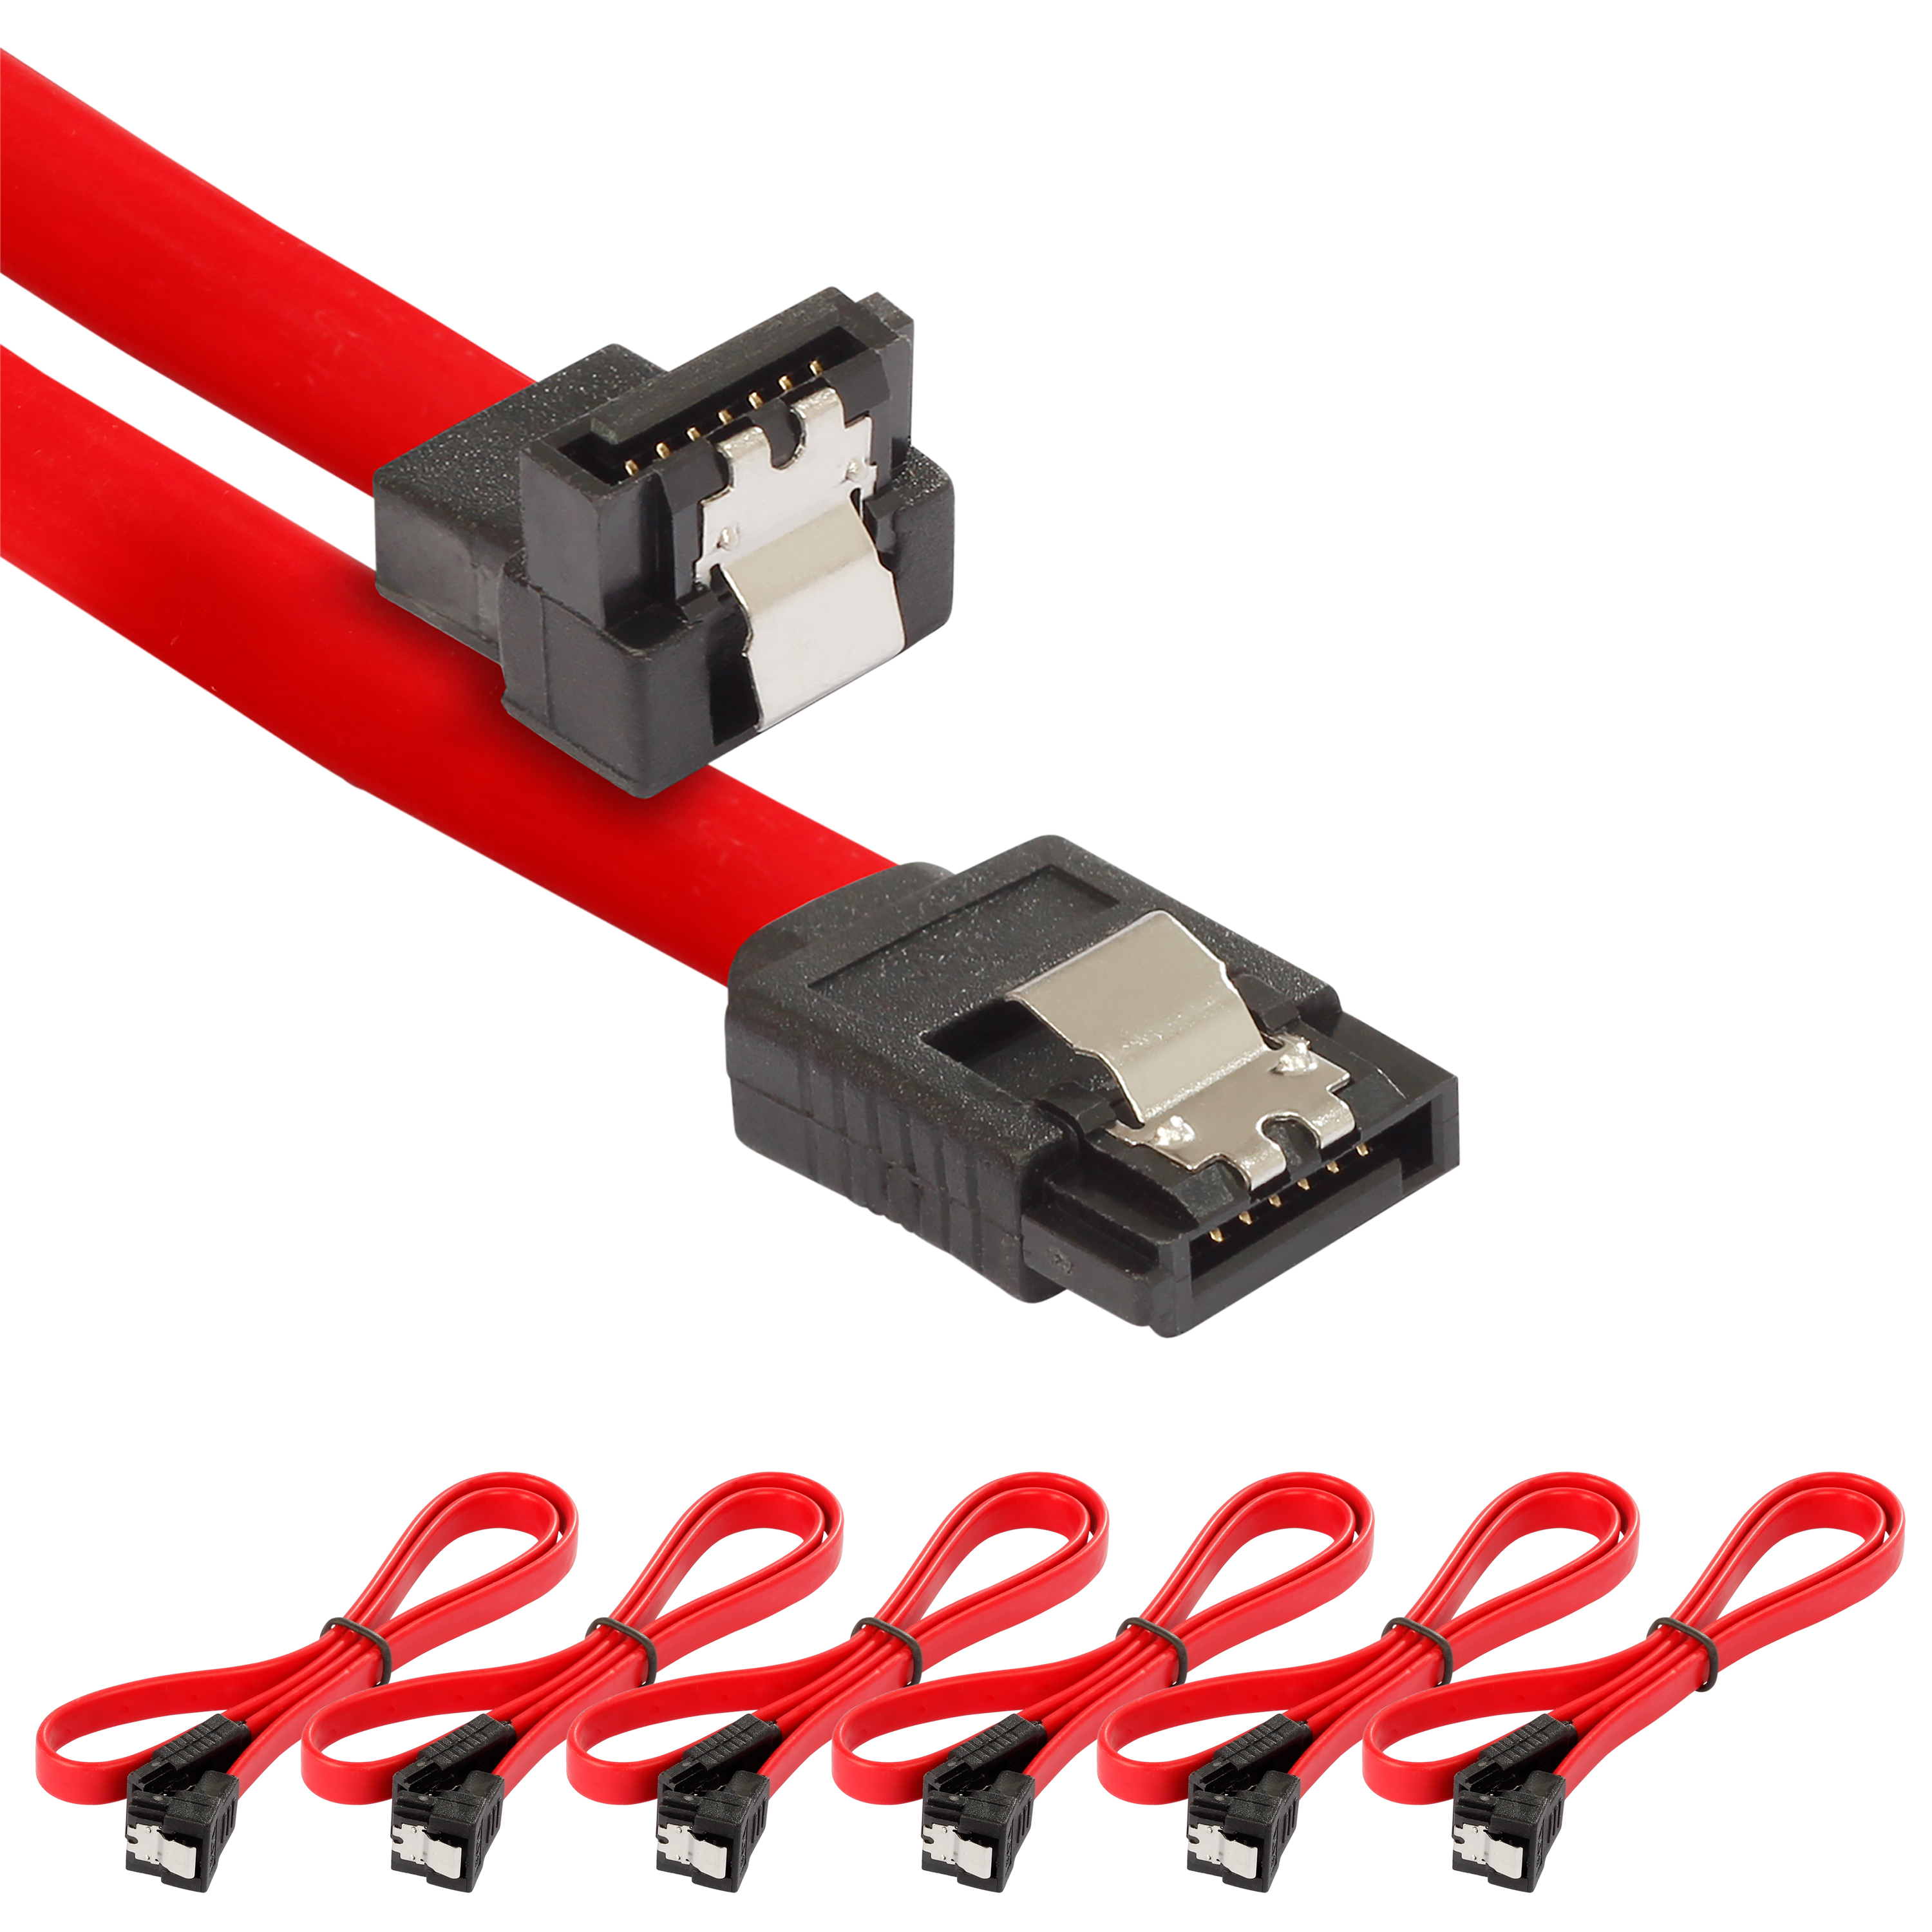 Sata 3 Kabel 0,5m, gerader/gewinkelter Stecker, 6 Stück, rot